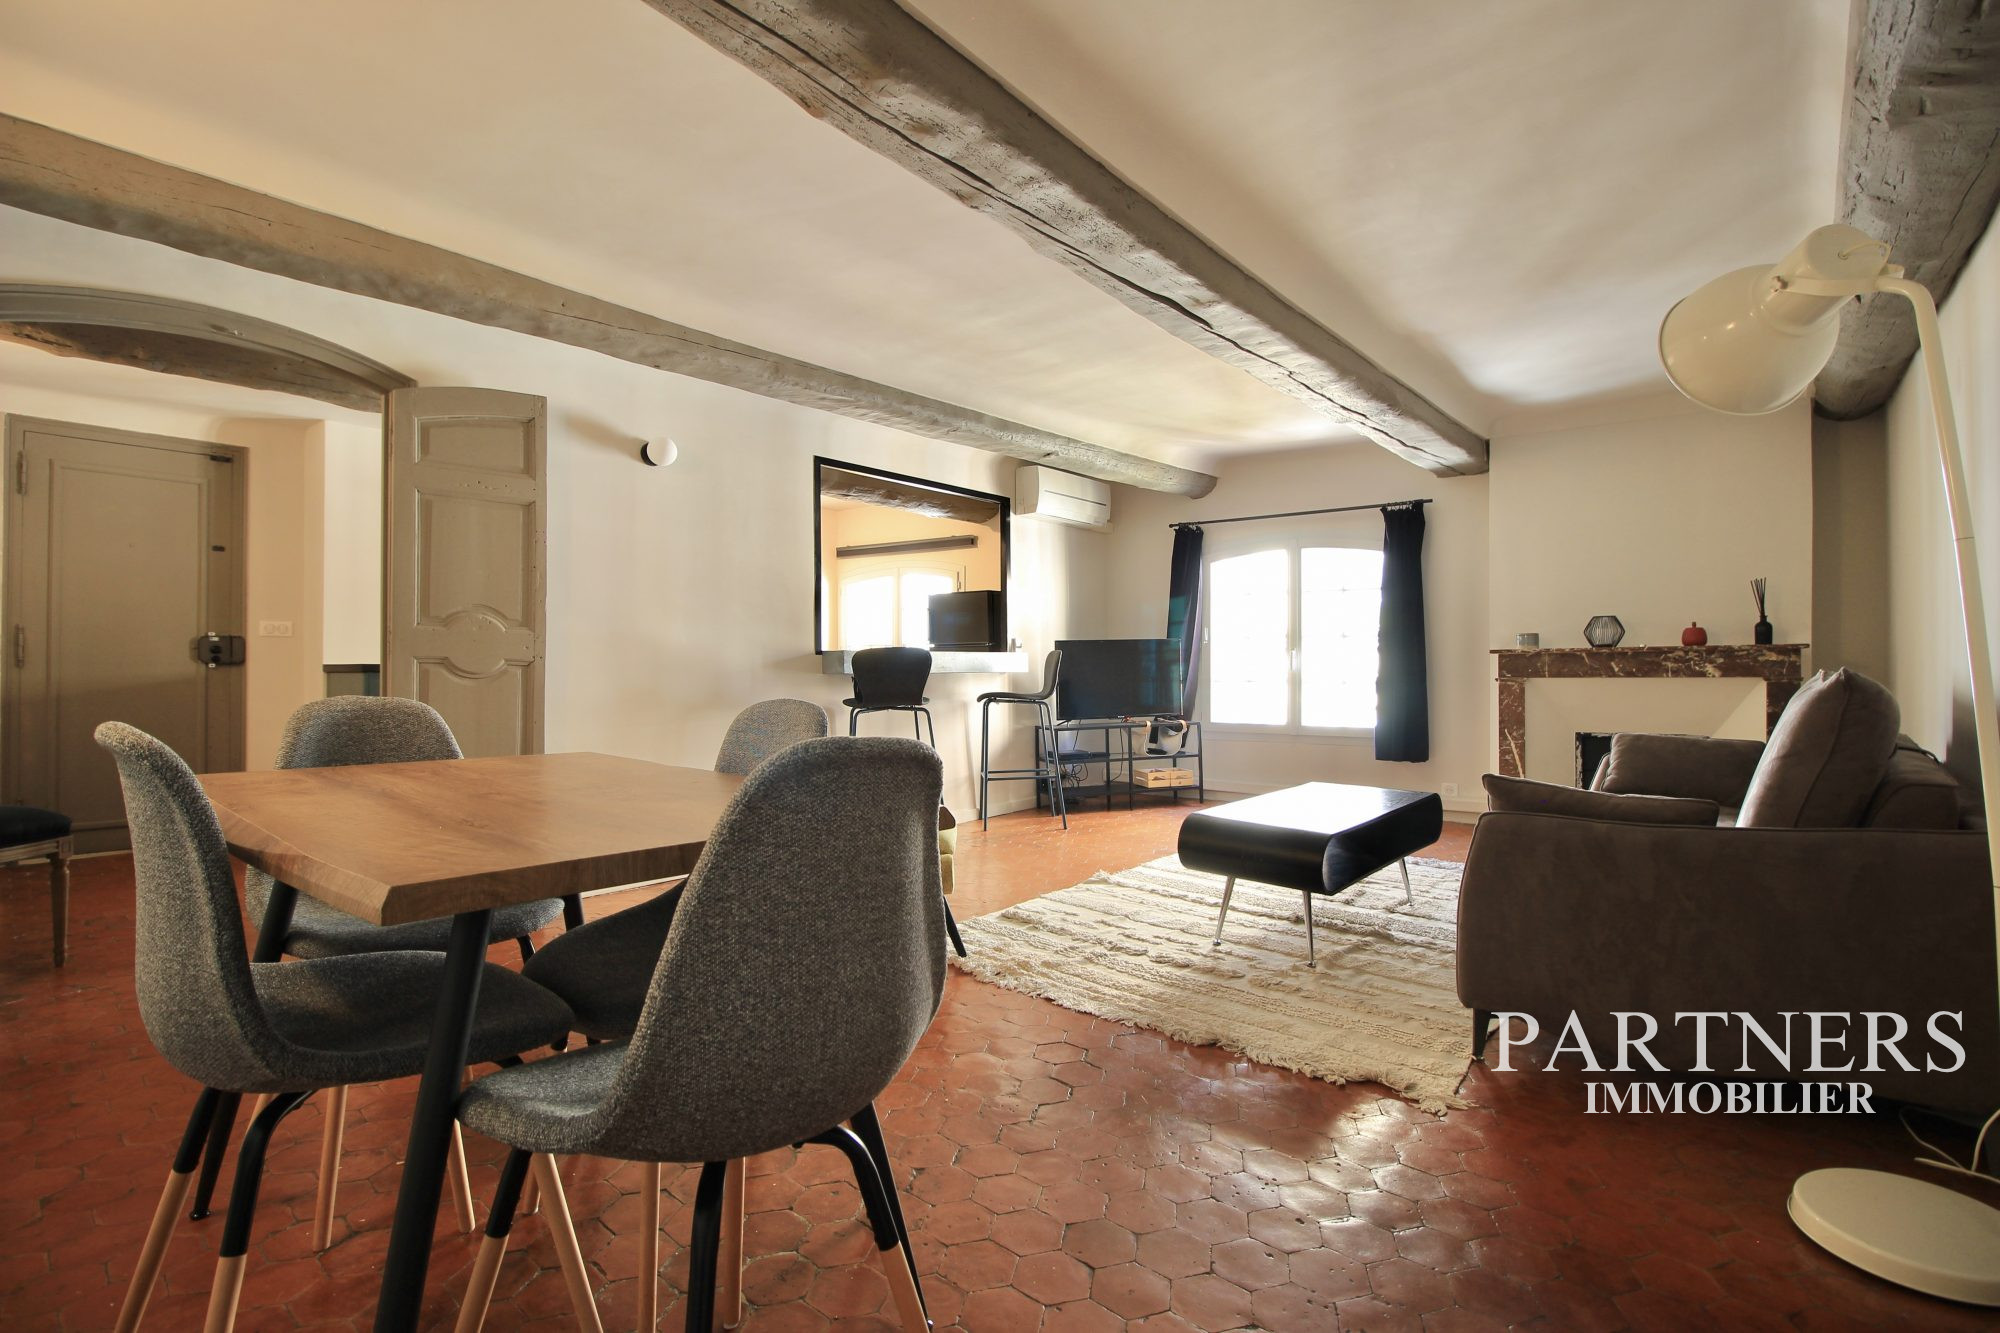 Vente Appartement 70m² 2 Pièces à Aix en Provence (13100) - Partners Immobilier